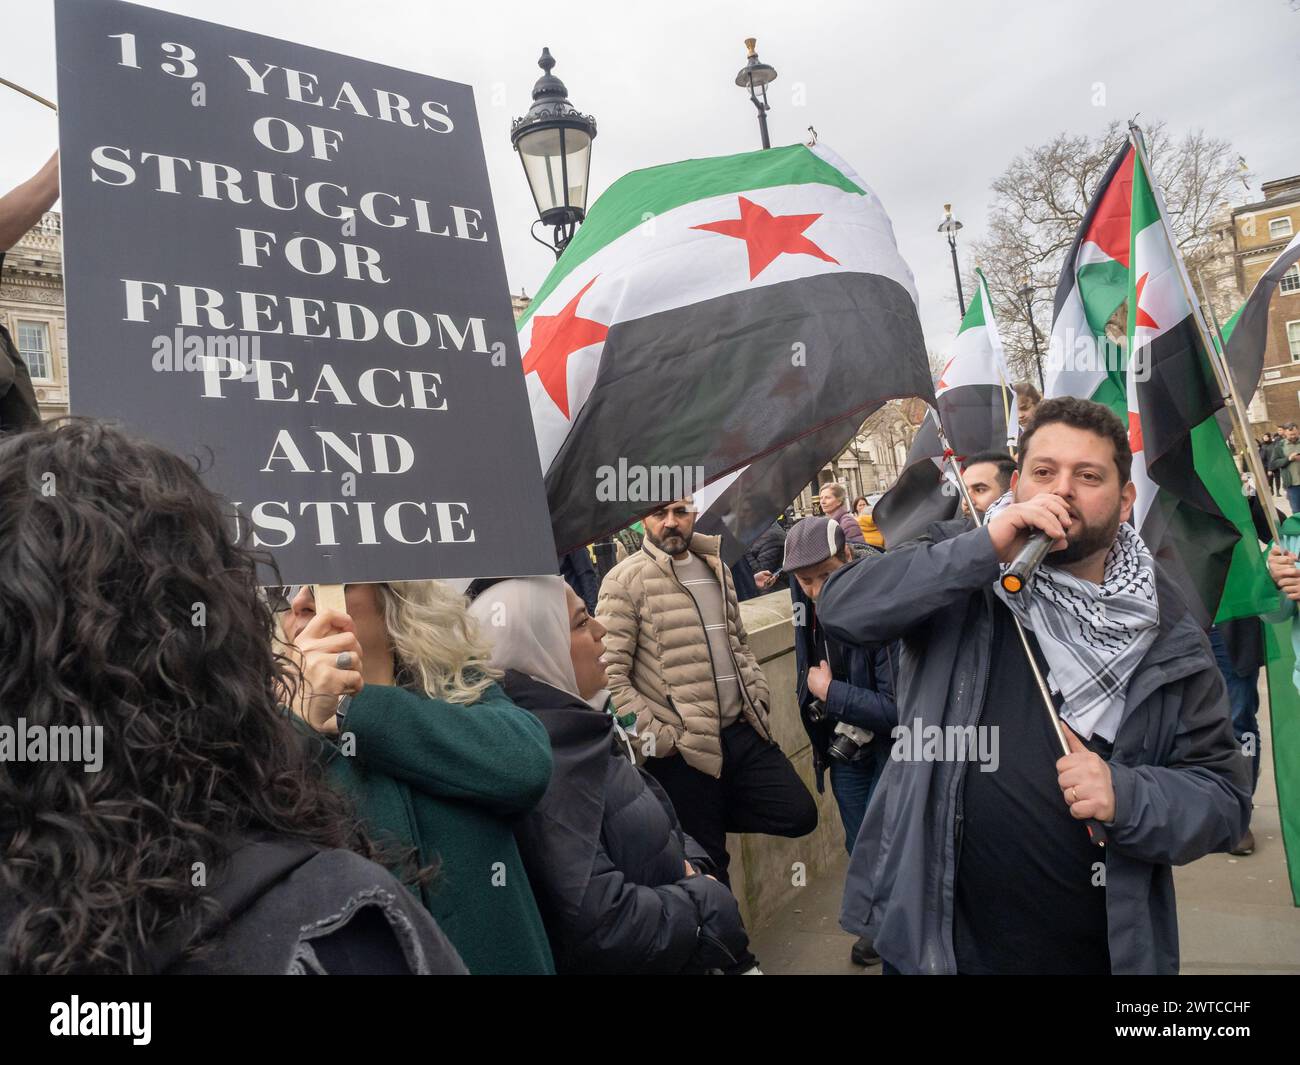 Londra, Regno Unito. 16 marzo 2024. Protesta siriana a Downing St nel tredicesimo anniversario della Rivoluzione siriana. Più della metà della popolazione siriana è stata sfollata con milioni di persone in fuga dal paese, mentre il regime di Asdsad ha commesso indescrivibili atrocità contro il popolo siriano, che si è alzato pacificamente per la democrazia, le riforme e la responsabilità. Hanno invitato tutti a ricordare quei tanti siriani che sono stati uccisi e a continuare a sostenere le richieste di democrazia, riforme e responsabilità. Peter Marshall/Alamy Live News Foto Stock